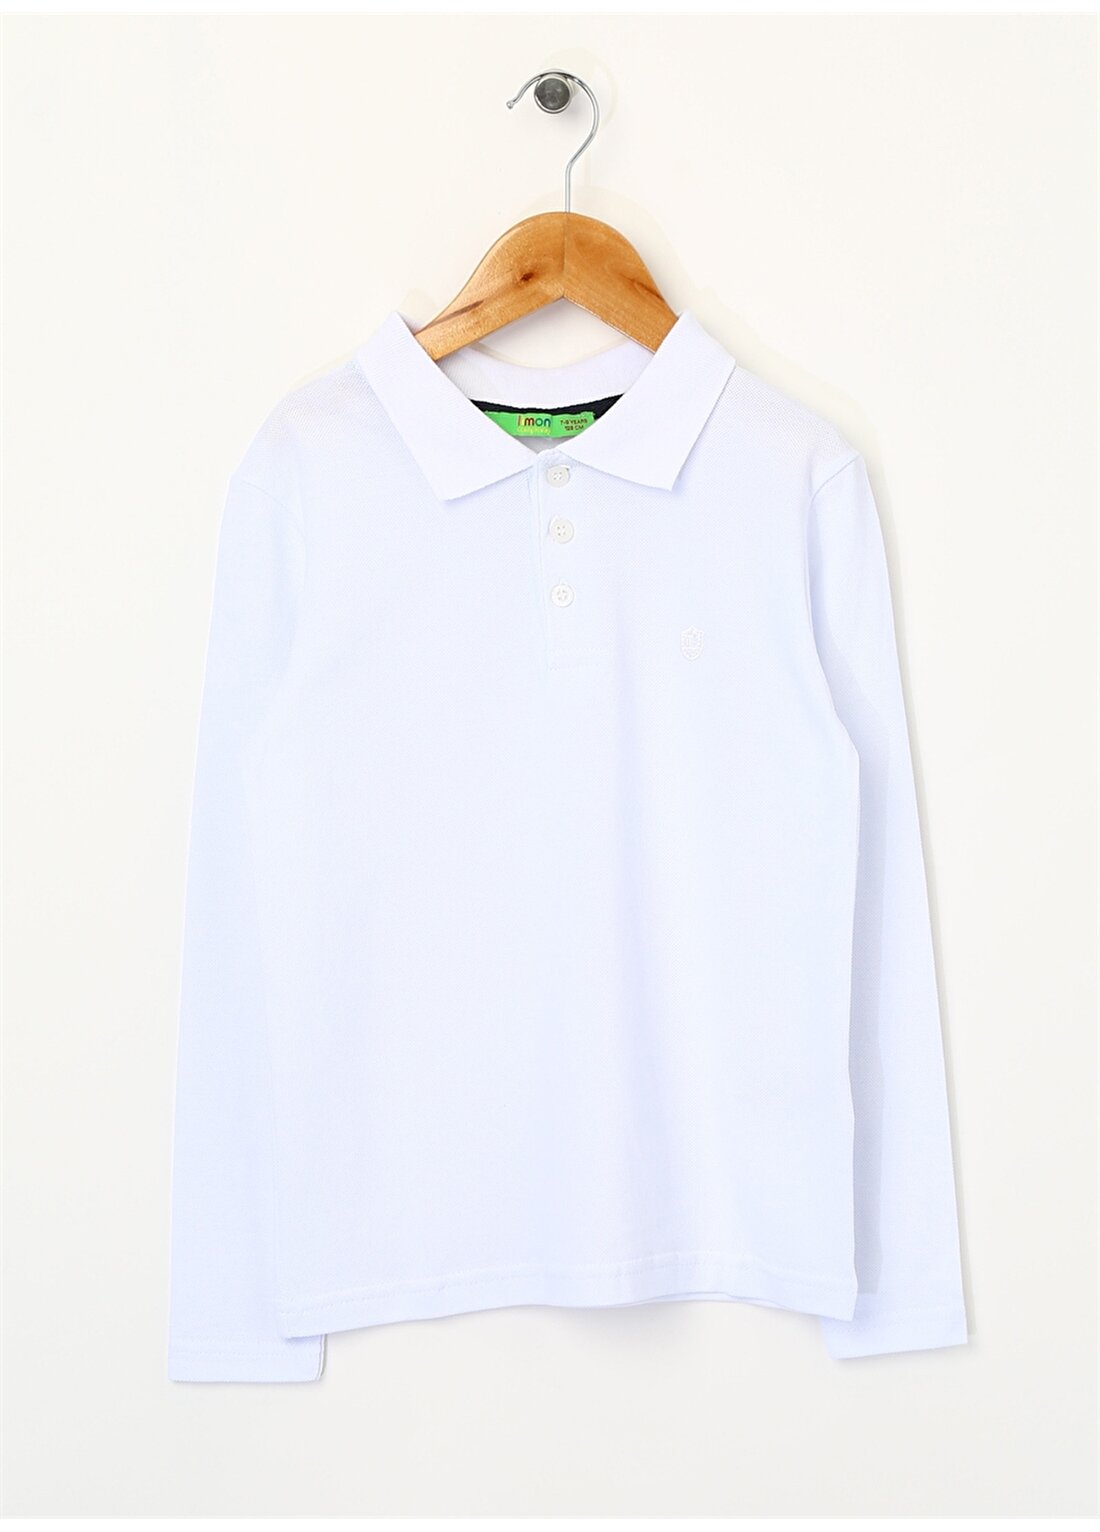 Limon Erkek Çocuk Polo Yaka Beyaz T-Shirt